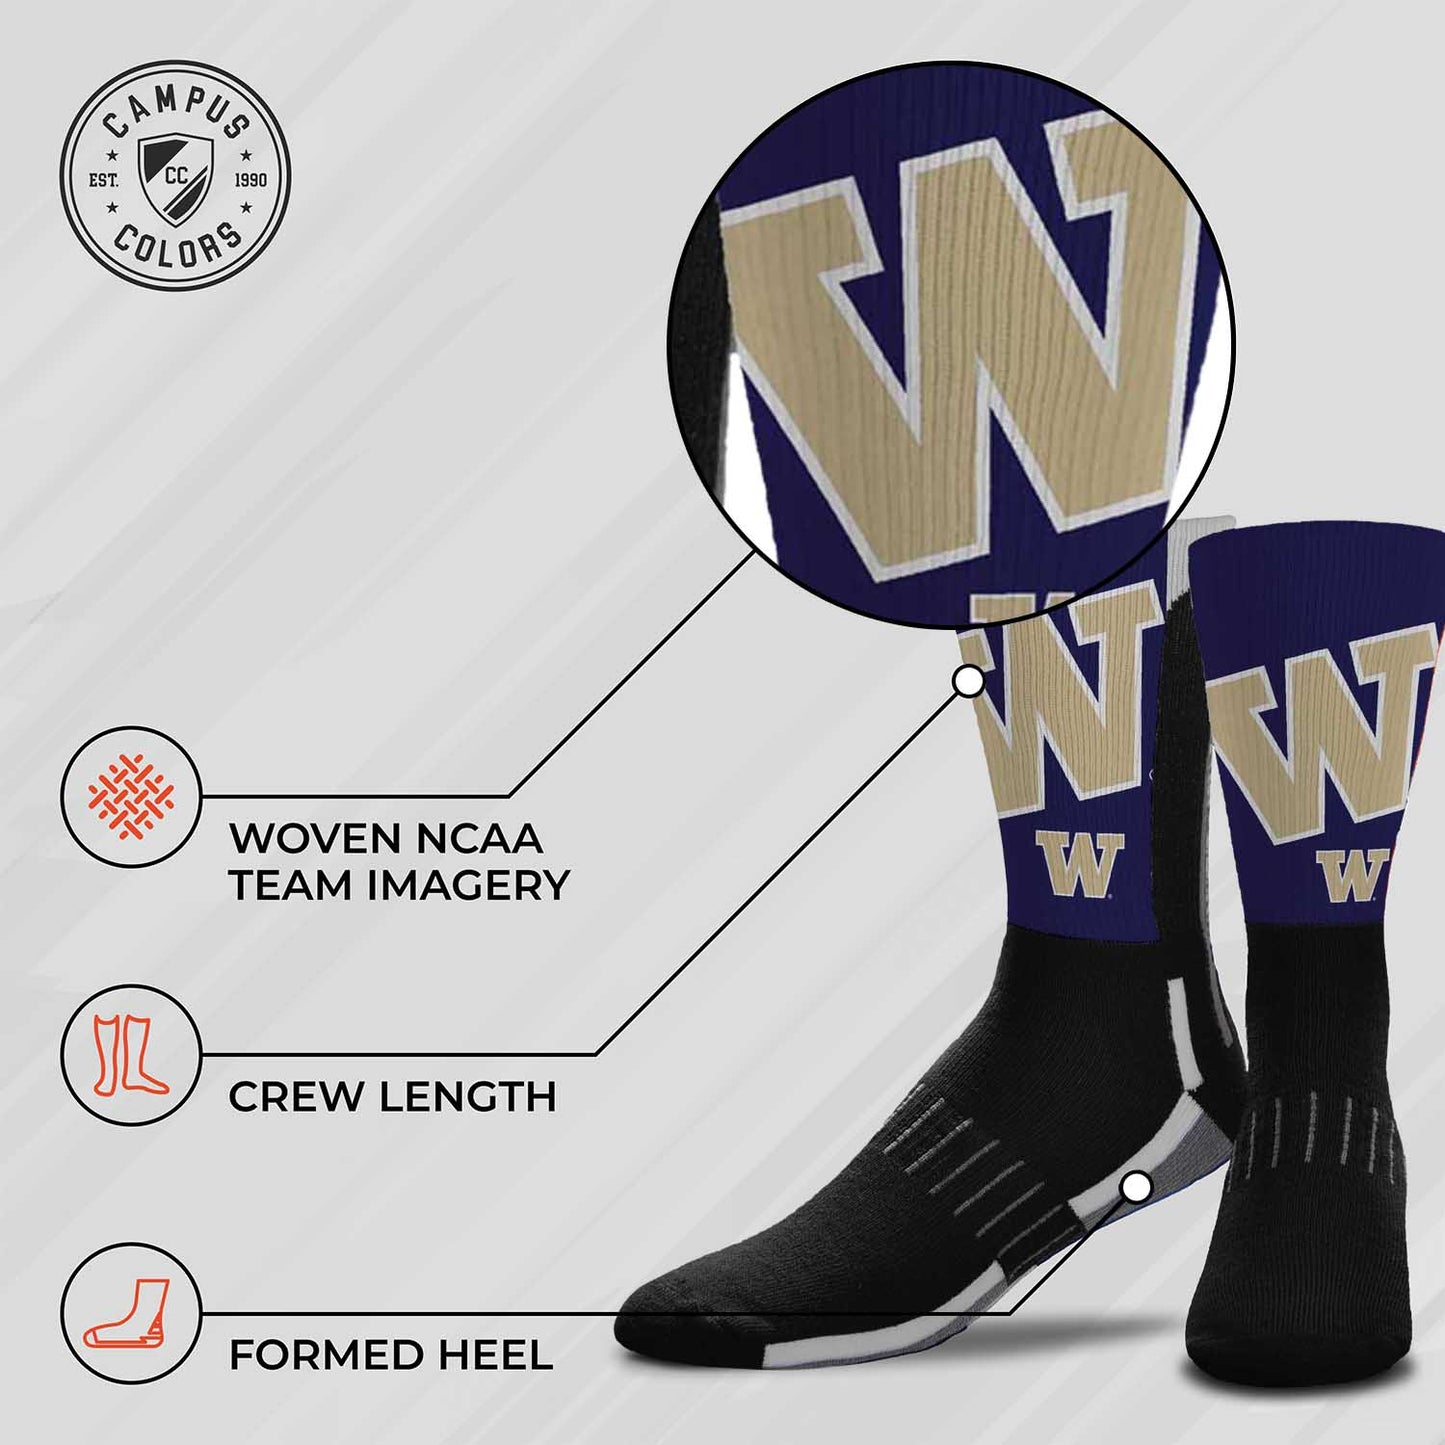 Washington Huskies NCAA Adult State and University Crew Socks - Black